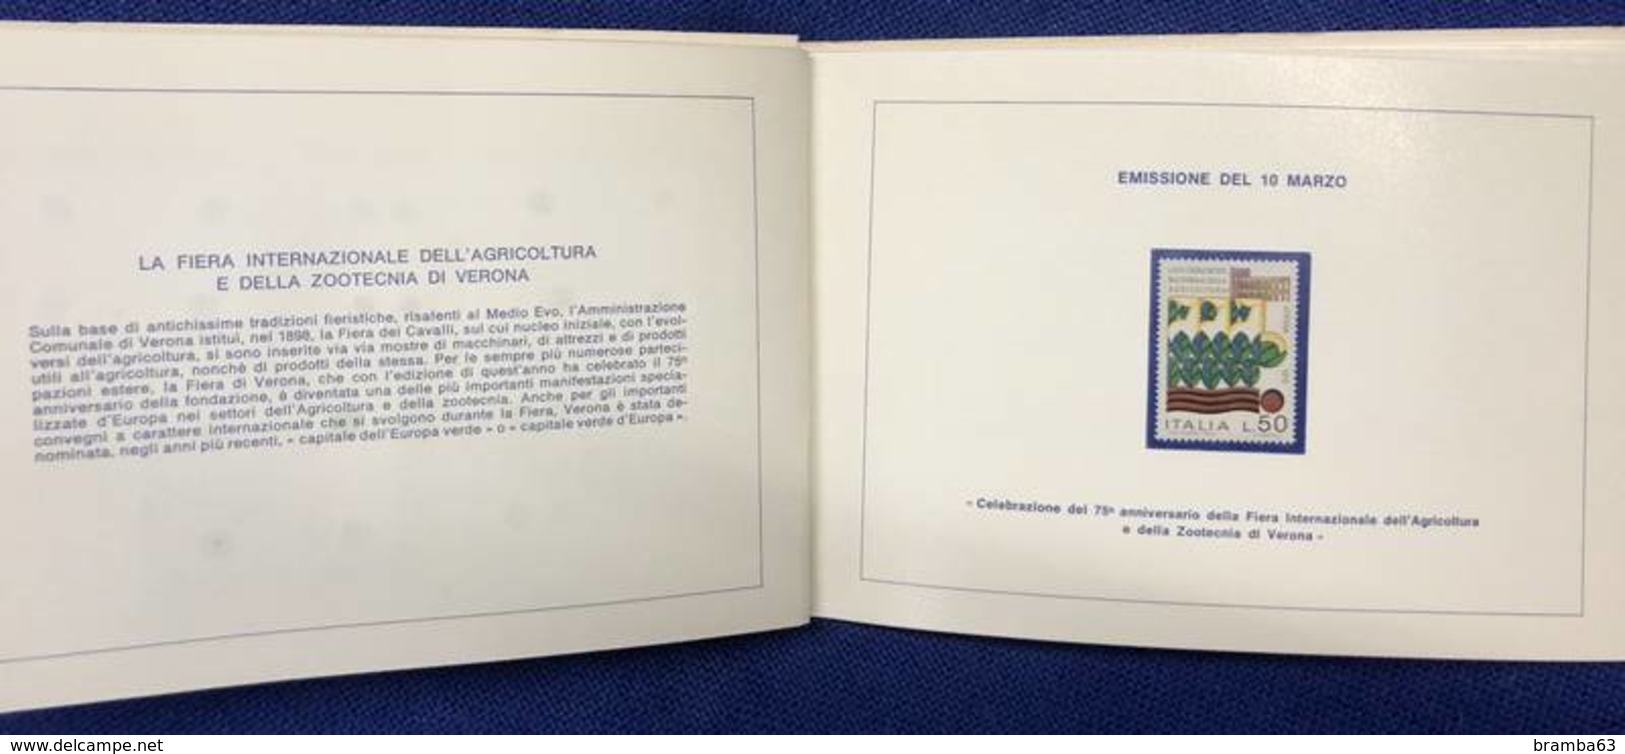 1973 Libretto francobolli emessi amministrazione postale italiana - completo nuovo (come da scansione)